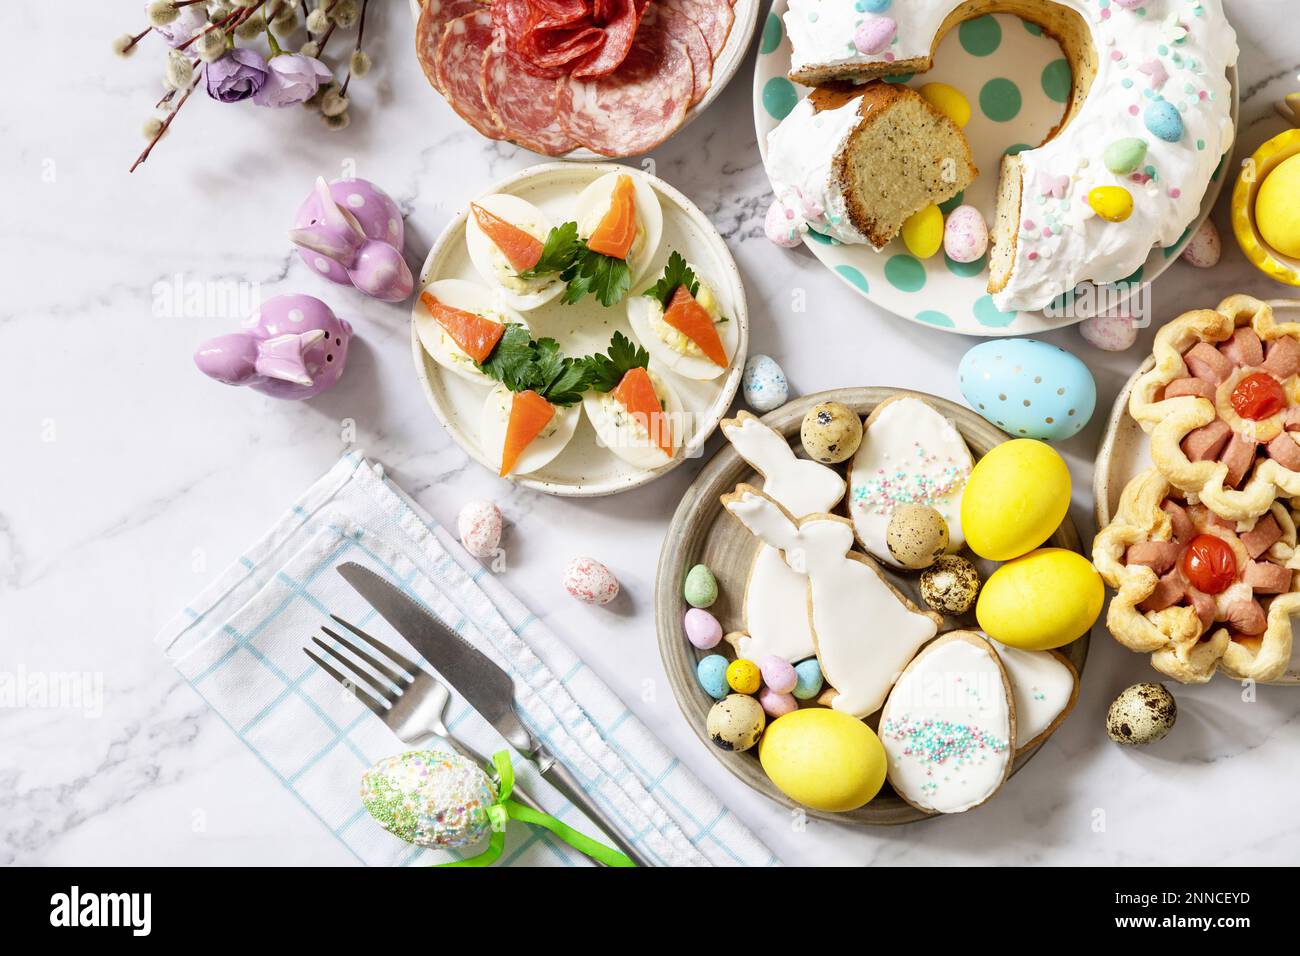 Festliches Abendessen, Osterbrunch. Ostertisch mit einer Auswahl an Backwaren, Desserts, gefüllten Eiern und gefärbten Eiern auf Marmorhintergrund. Ansicht von Stockfoto